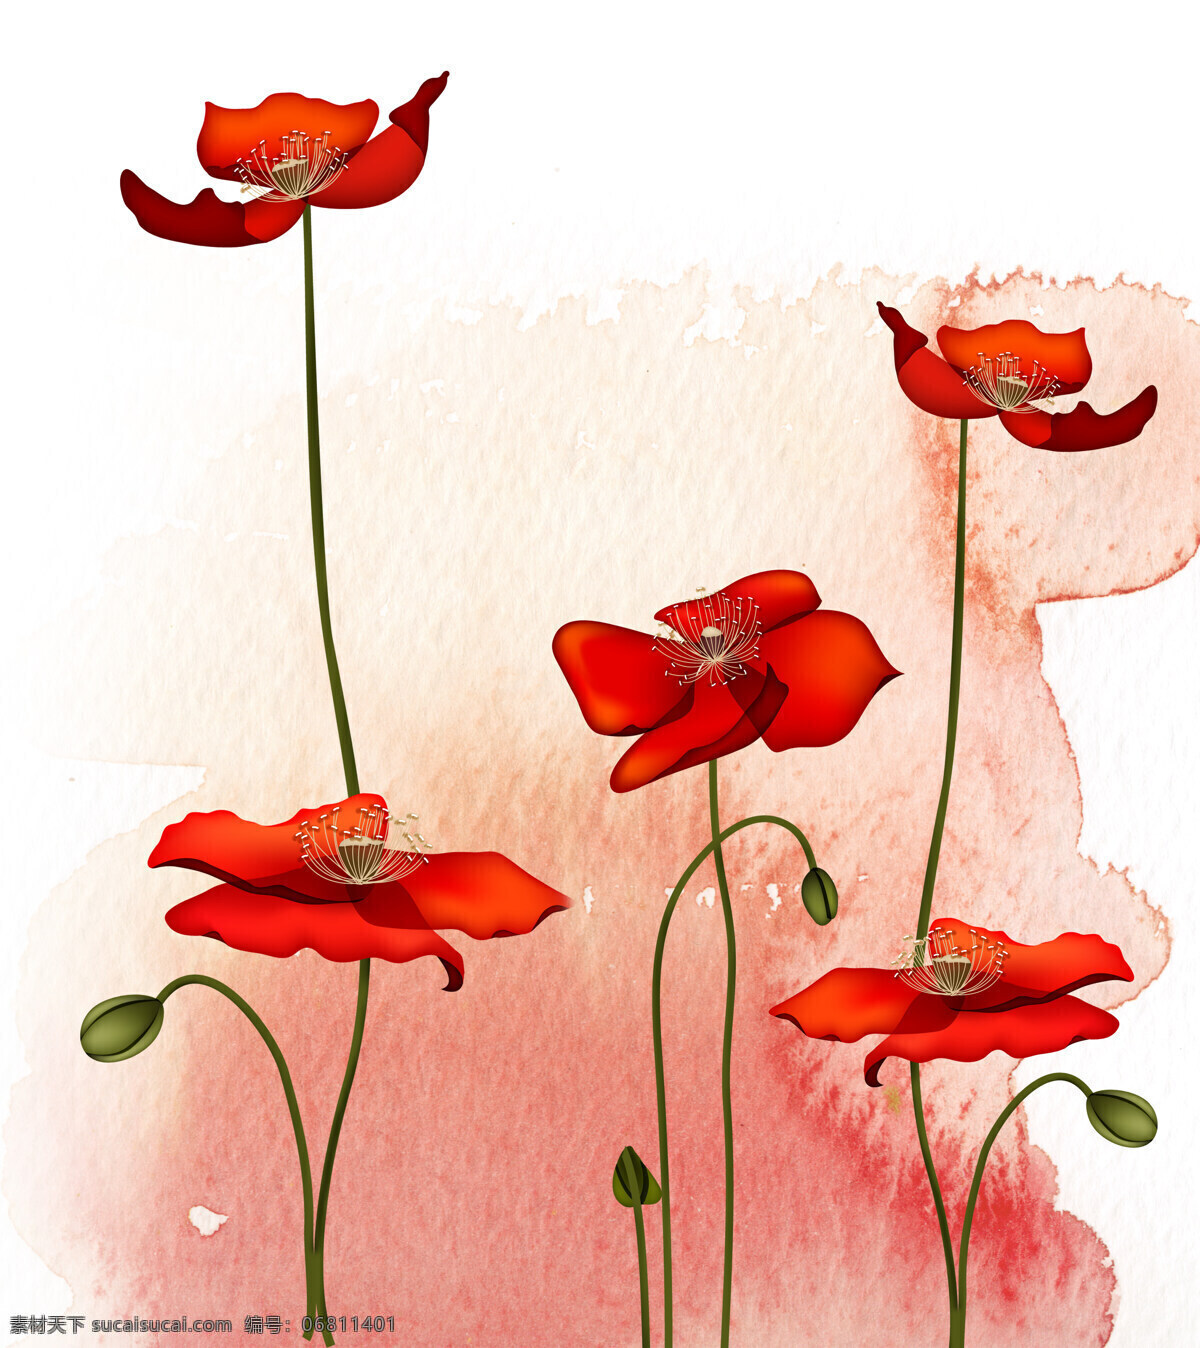 明艳 动人 移门 图案 插画 抽象 个性 红色 花瓣 花蕾 装饰素材